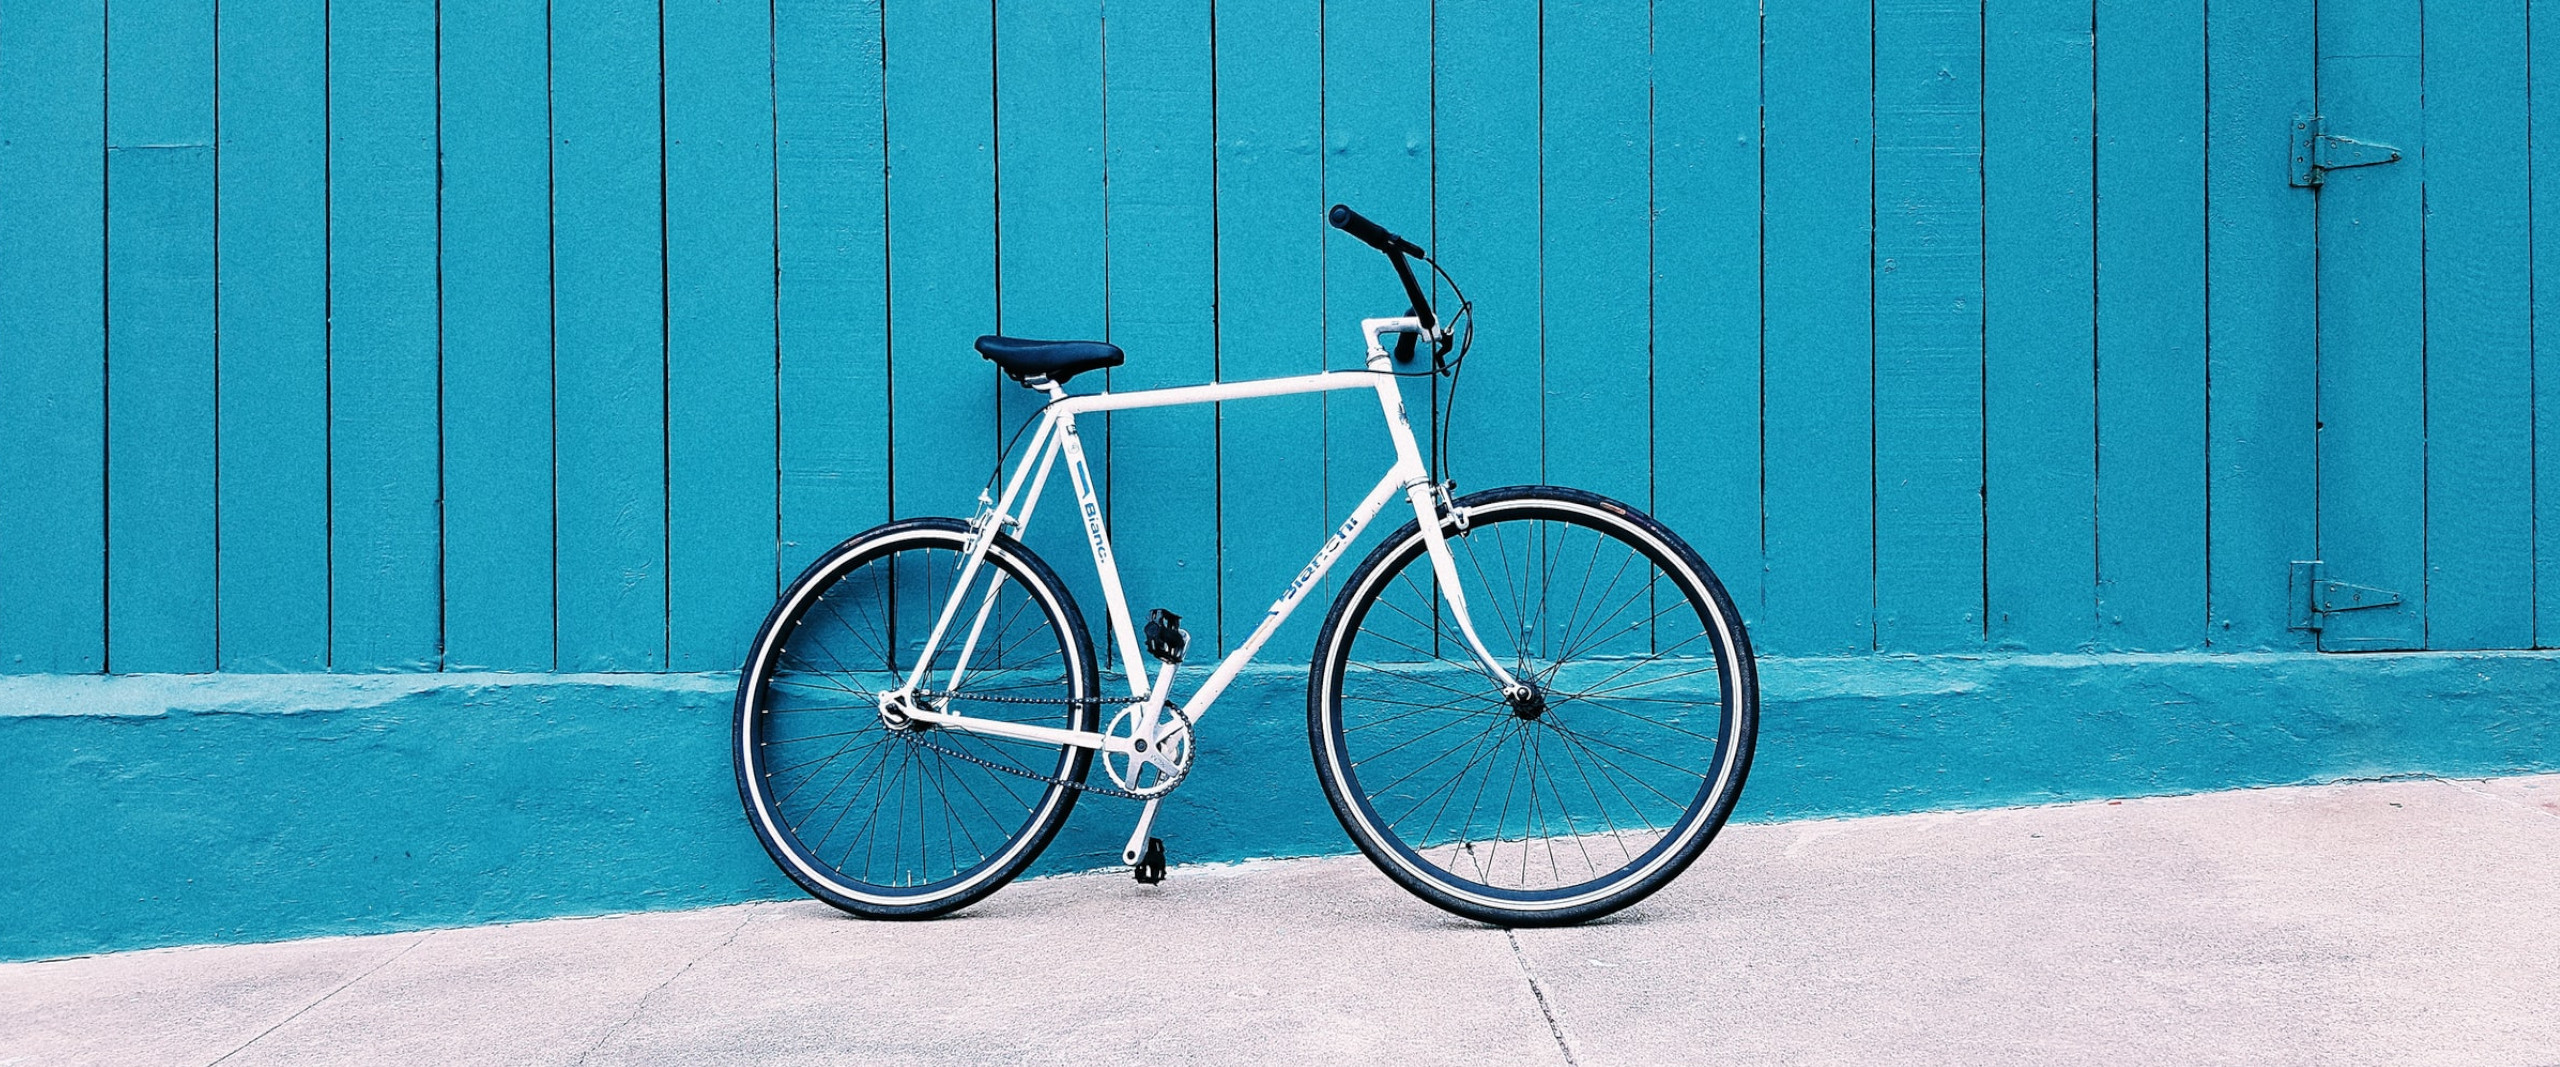 Fahrrad lehnt an blauer Wand